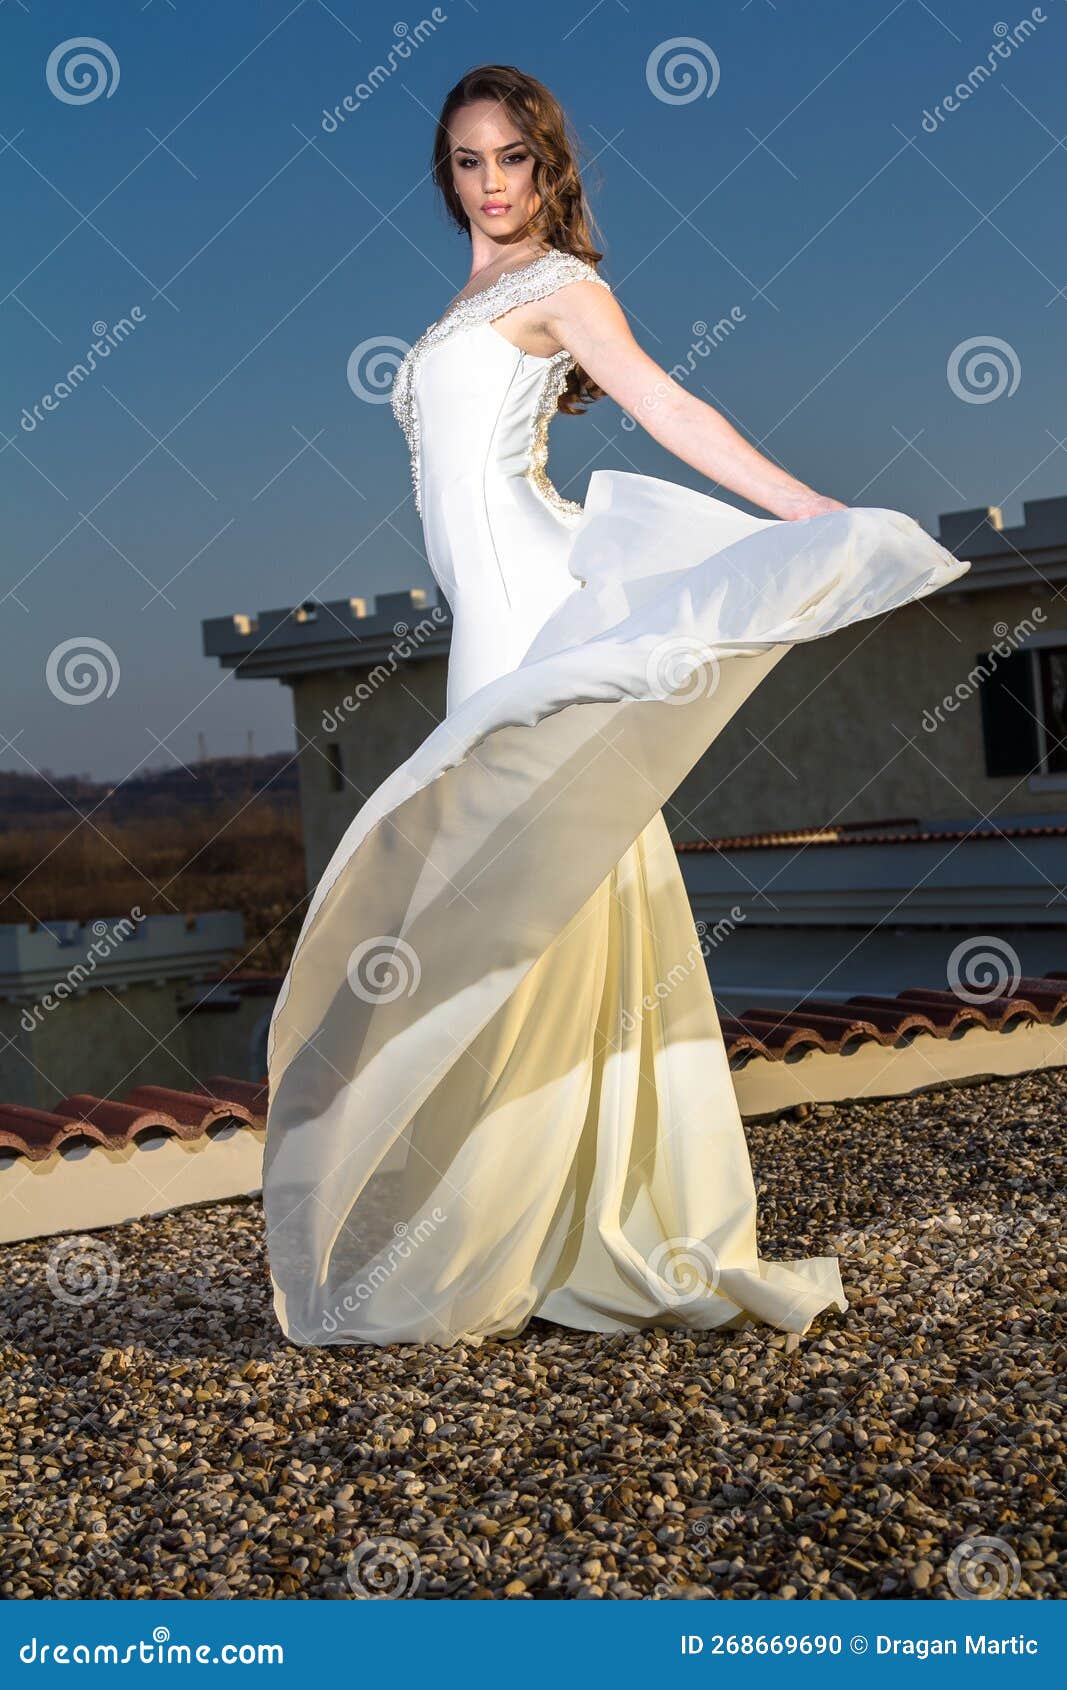 Mujer Joven Con Vestido Blanco Posa Con Parte Vestido Levantado Foto de archivo - Imagen de retro, hermoso: 268669690